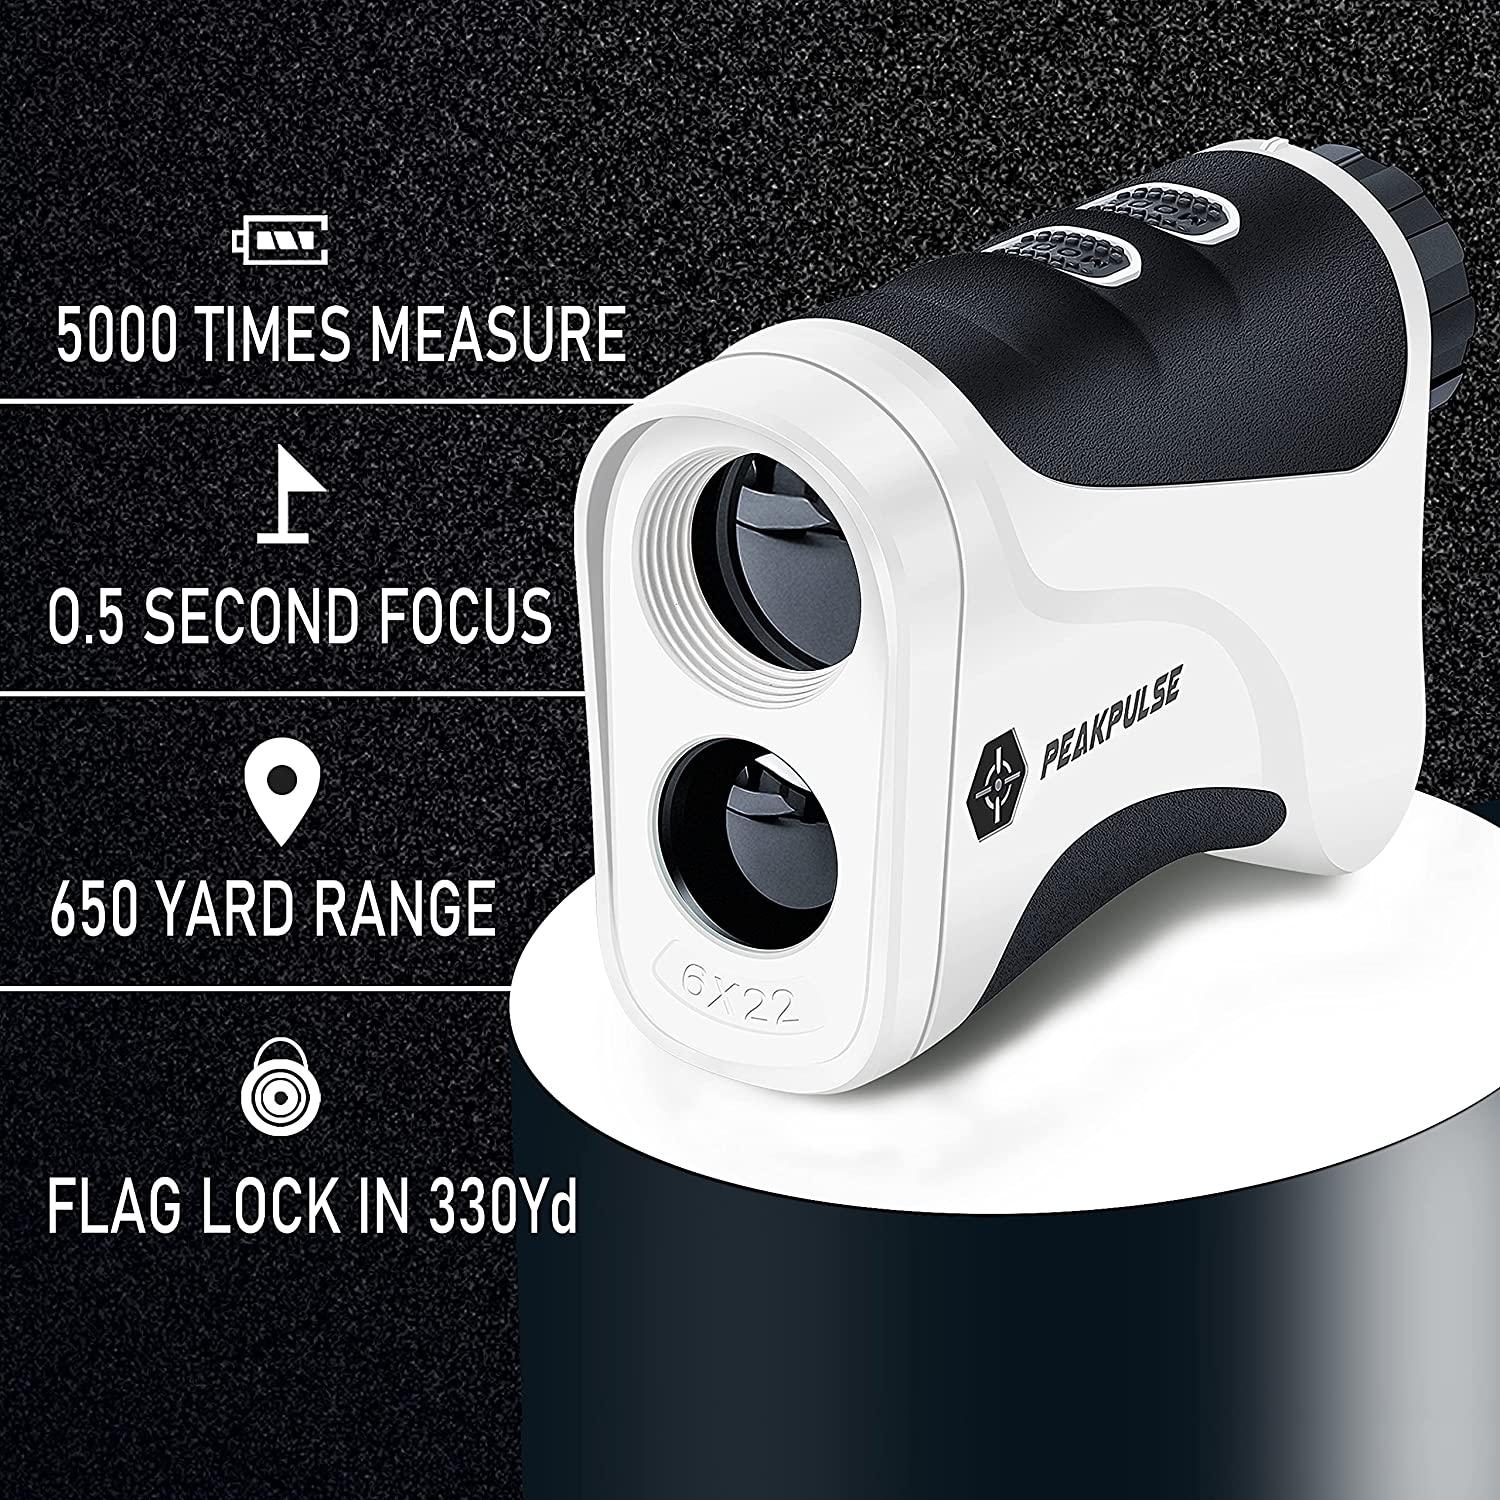 PEAKPULSE Golf Laser Rangefinder for Golf and Hunting Range Finder Gift, Distance Finder with Slope Mode, Flag Pole Locking VibrationFast Focus System White and Black 6 Pro Slope Version